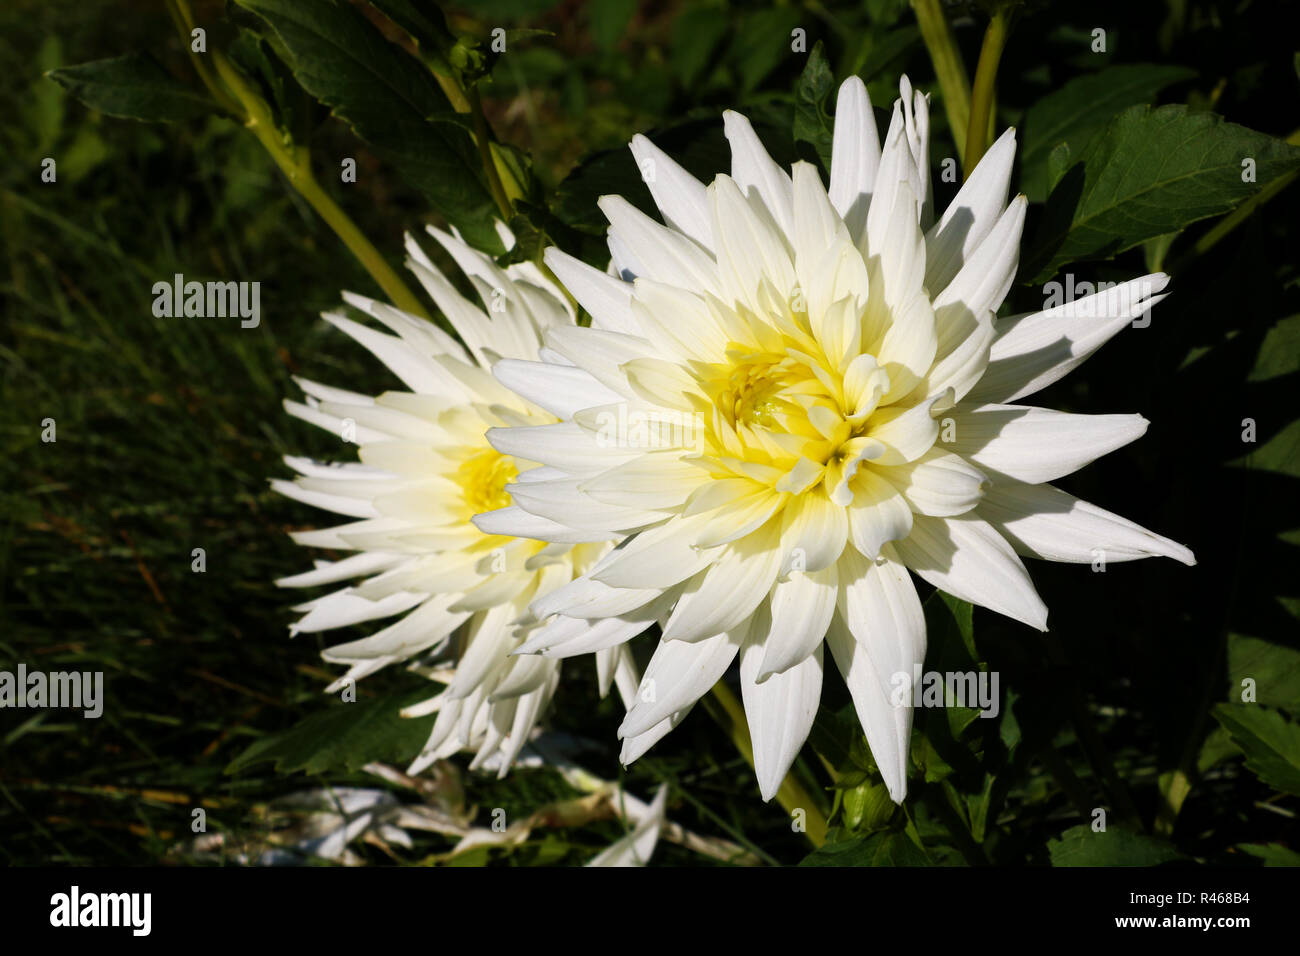 Dahlia with creamy white petals. Dahlia White star. White dahlias in the garden Stock Photo